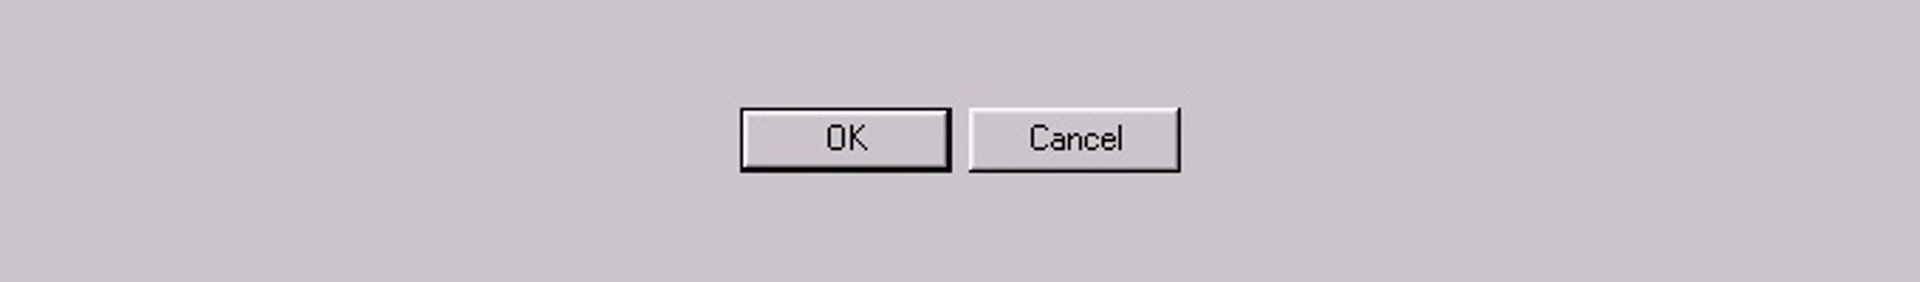 A Windows 95 screenshot (an OK button and a cancel button)